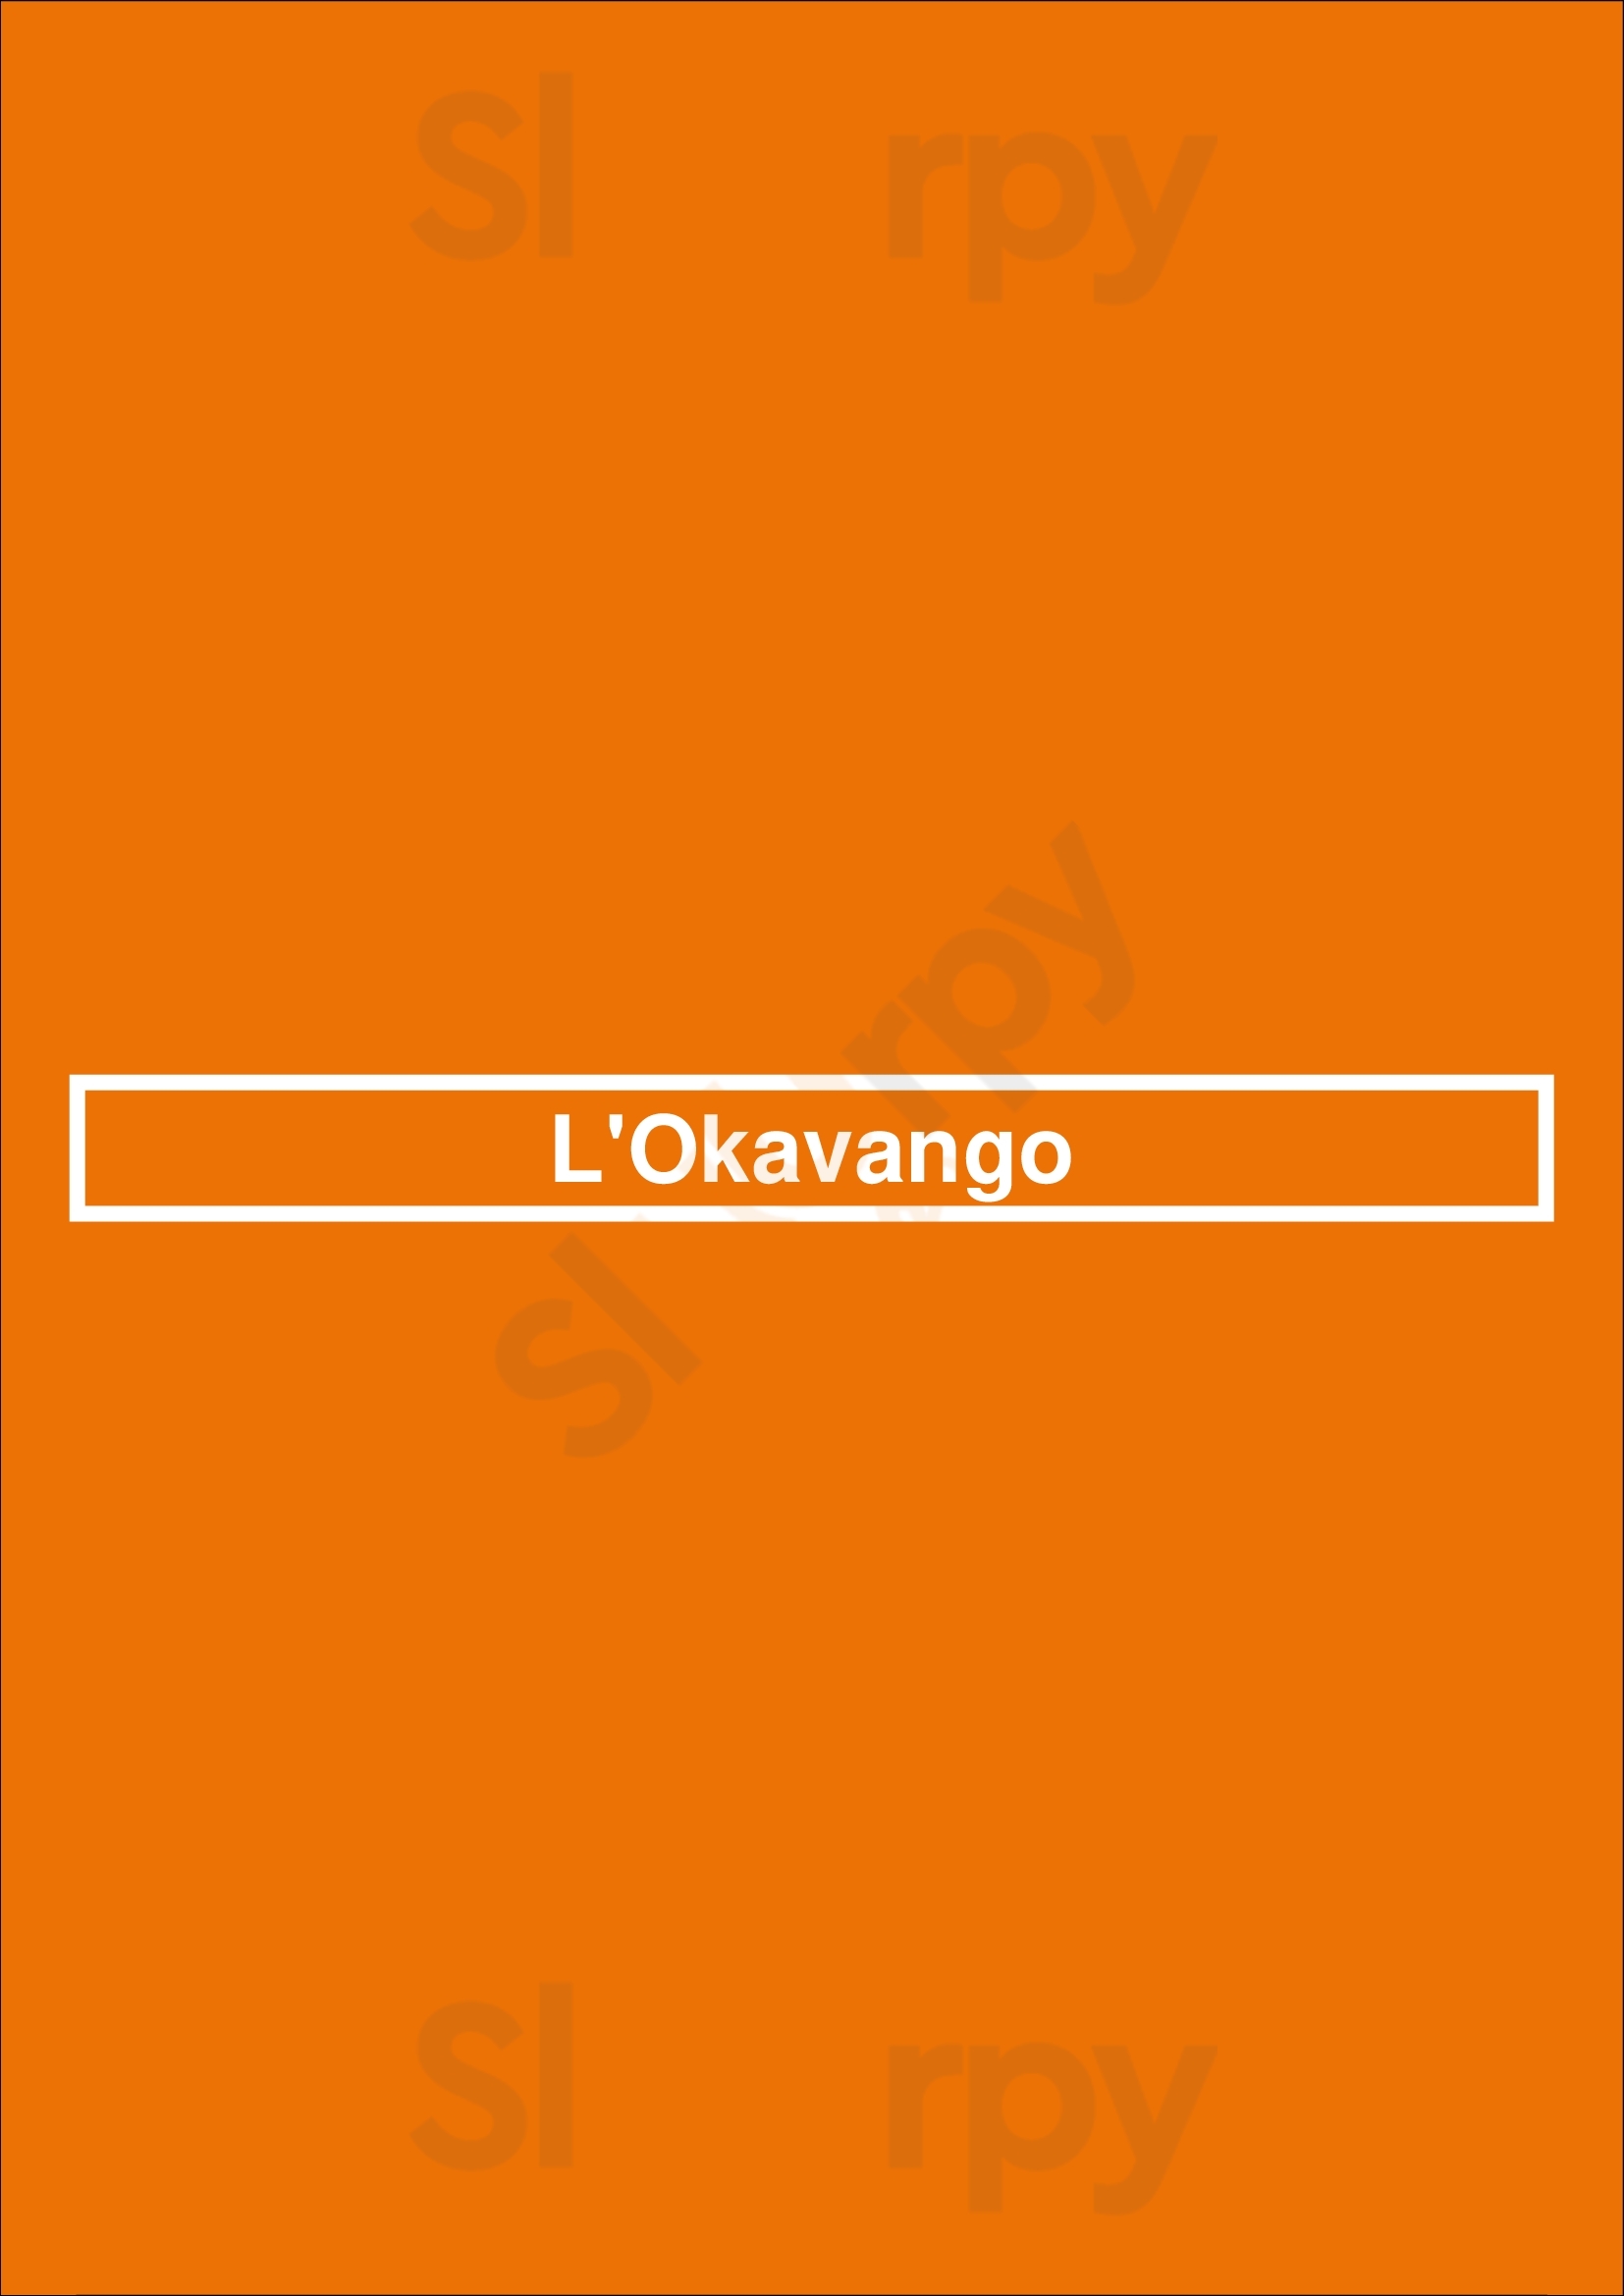 L'okavango Chatillon-sur-Chalaronne Menu - 1